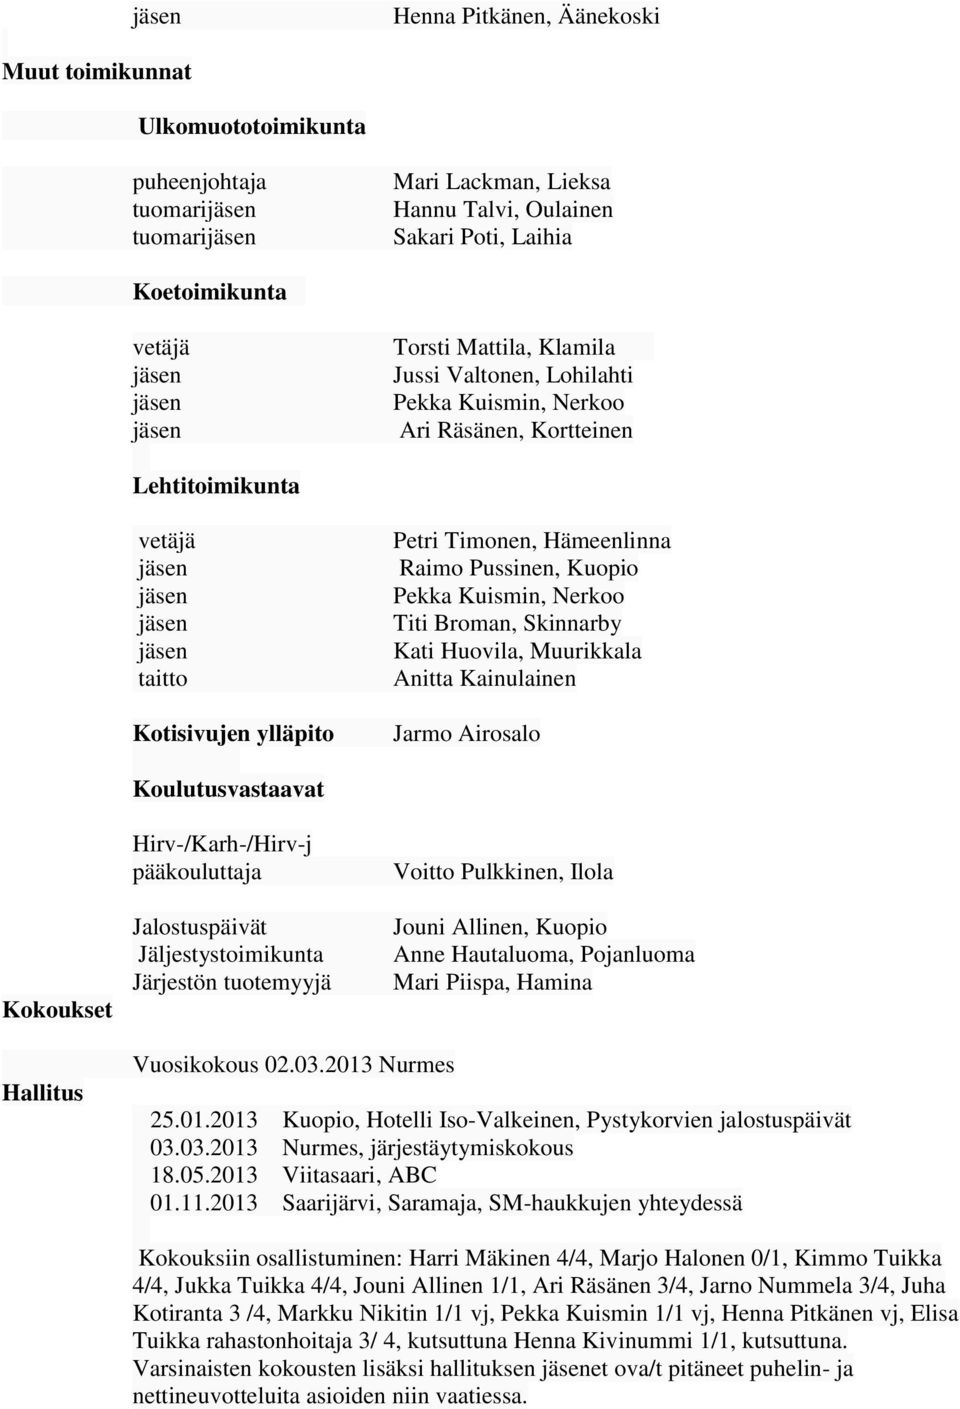 Kainulainen Jarmo Airosalo Koulutusvastaavat Kokoukset Hirv-/Karh-/Hirv-j pääkouluttaja Jalostuspäivät Jäljestystoimikunta Järjestön tuotemyyjä Voitto Pulkkinen, Ilola Jouni Allinen, Kuopio Anne